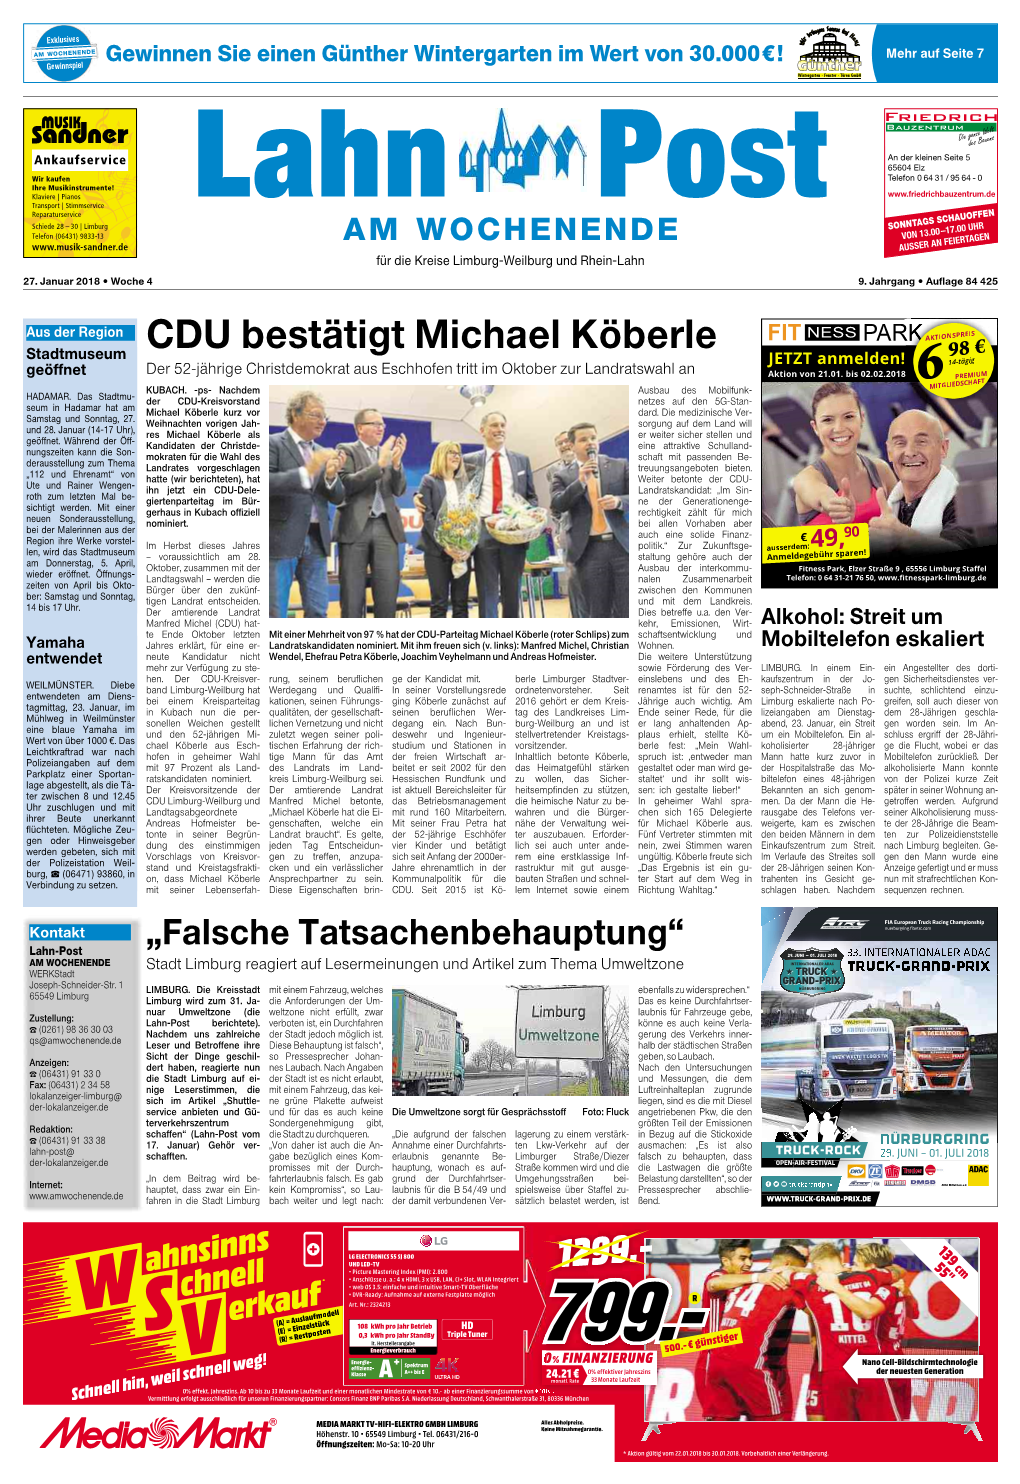 CDU Bestätigt Michael Köberle